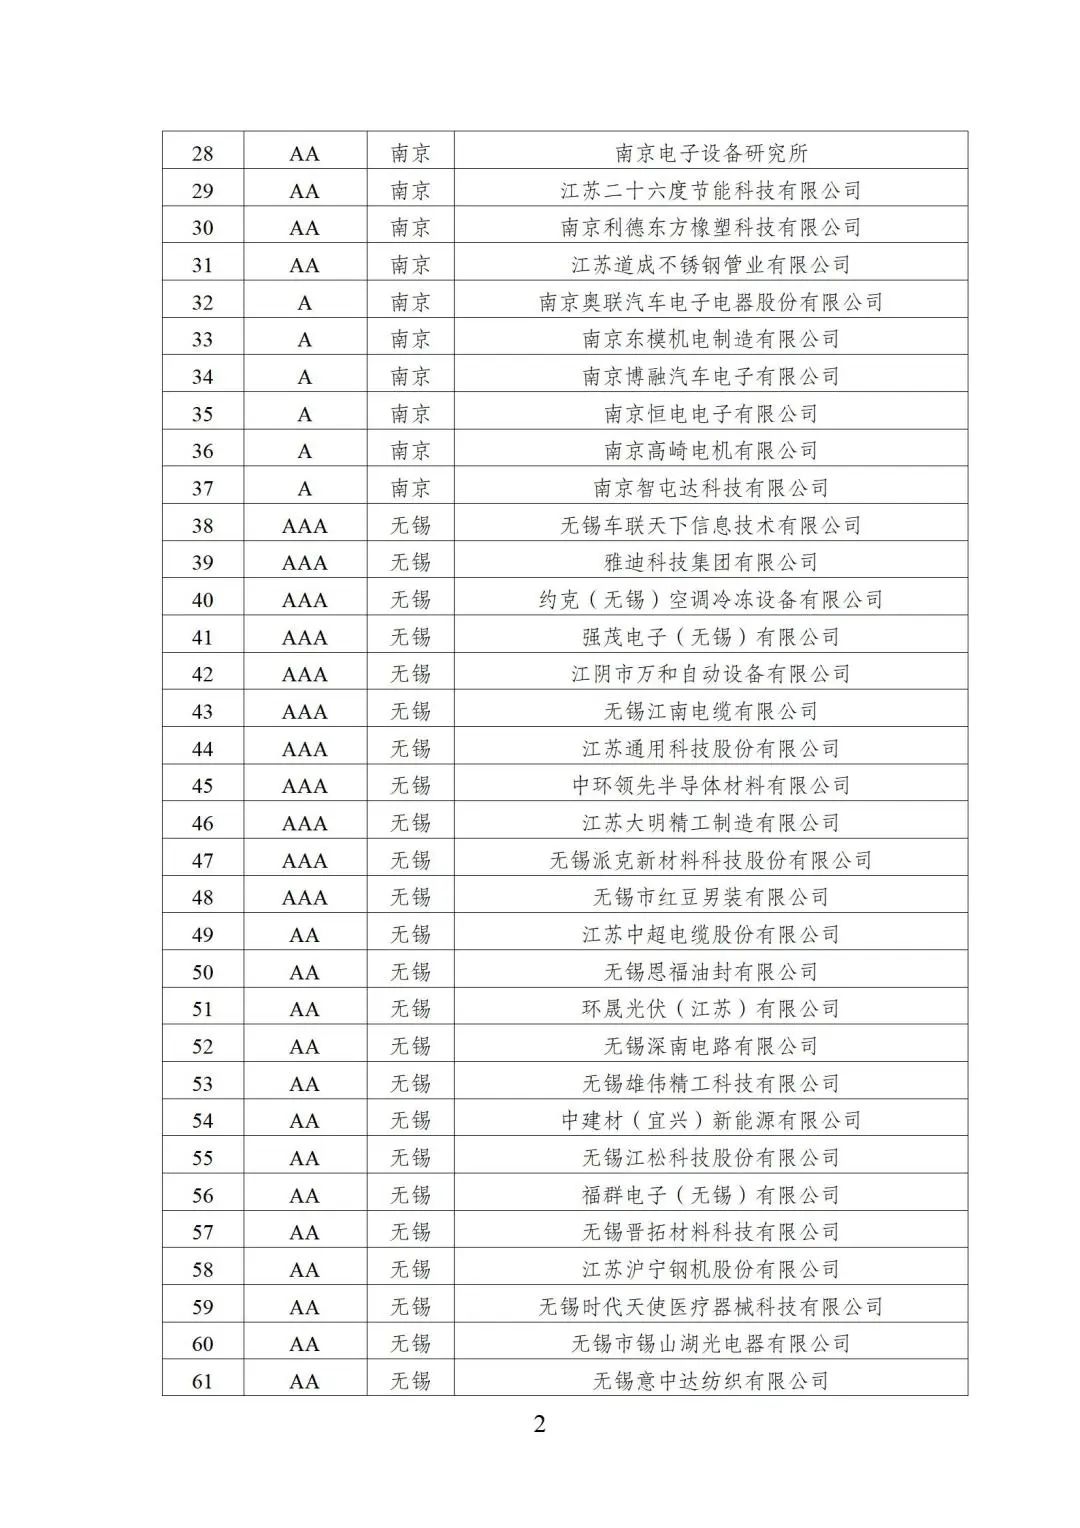 2022年江苏省两化融合管理体系贯标示范企业培育对象名单2.jpg